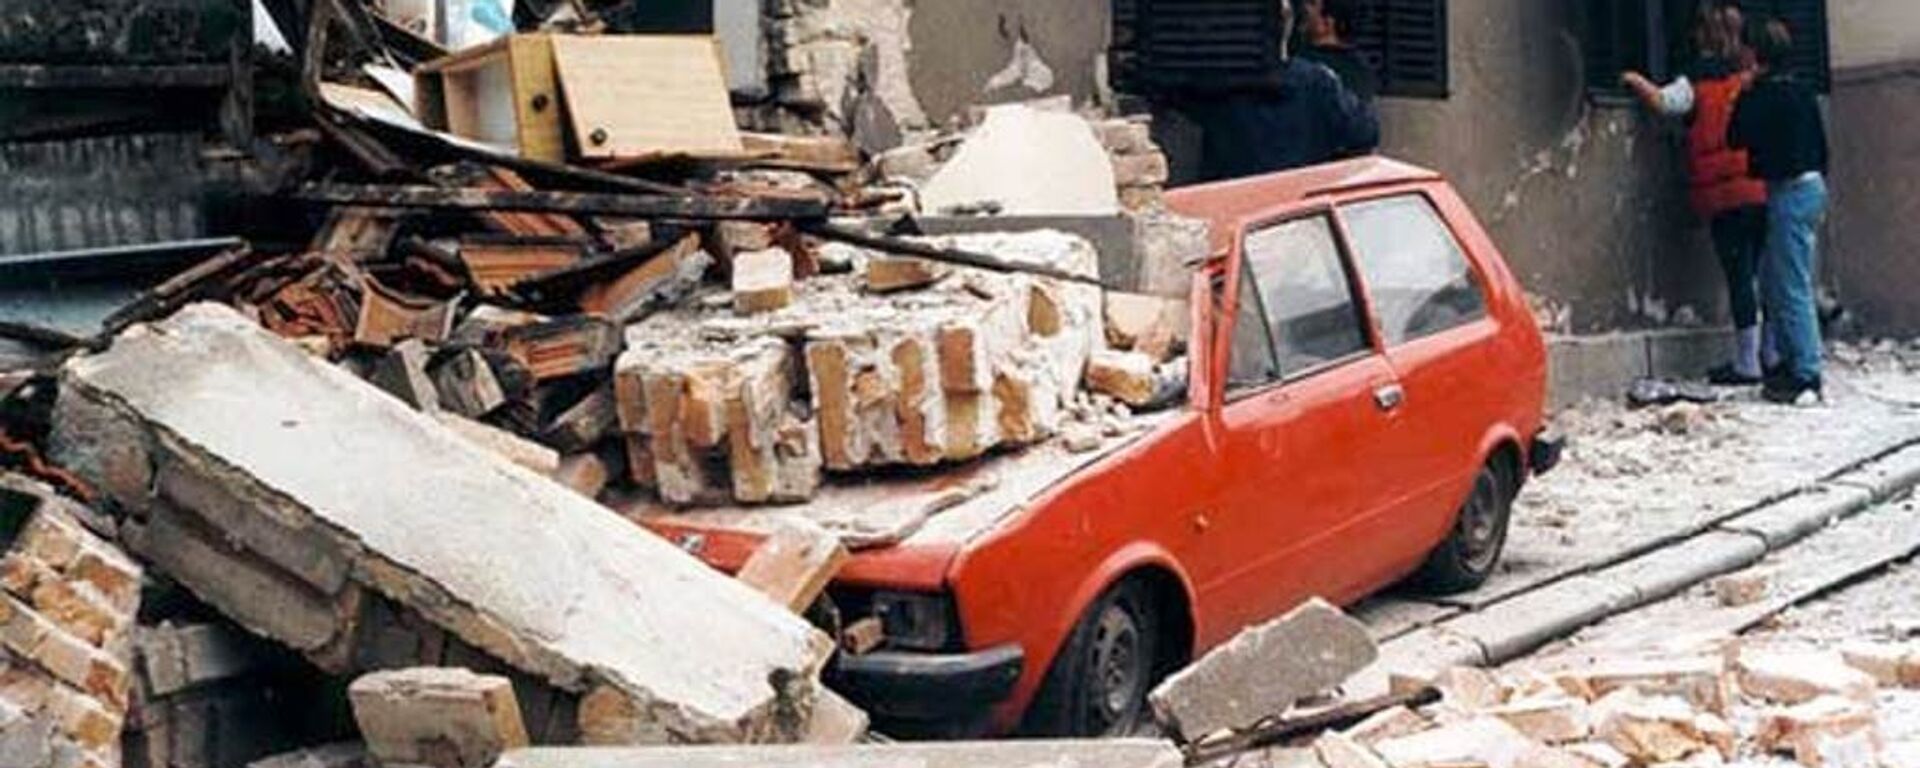 Ulica Beograda nakon naleta zasipanja bombama NATO-a 1999. godine - Sputnik Srbija, 1920, 23.03.2019